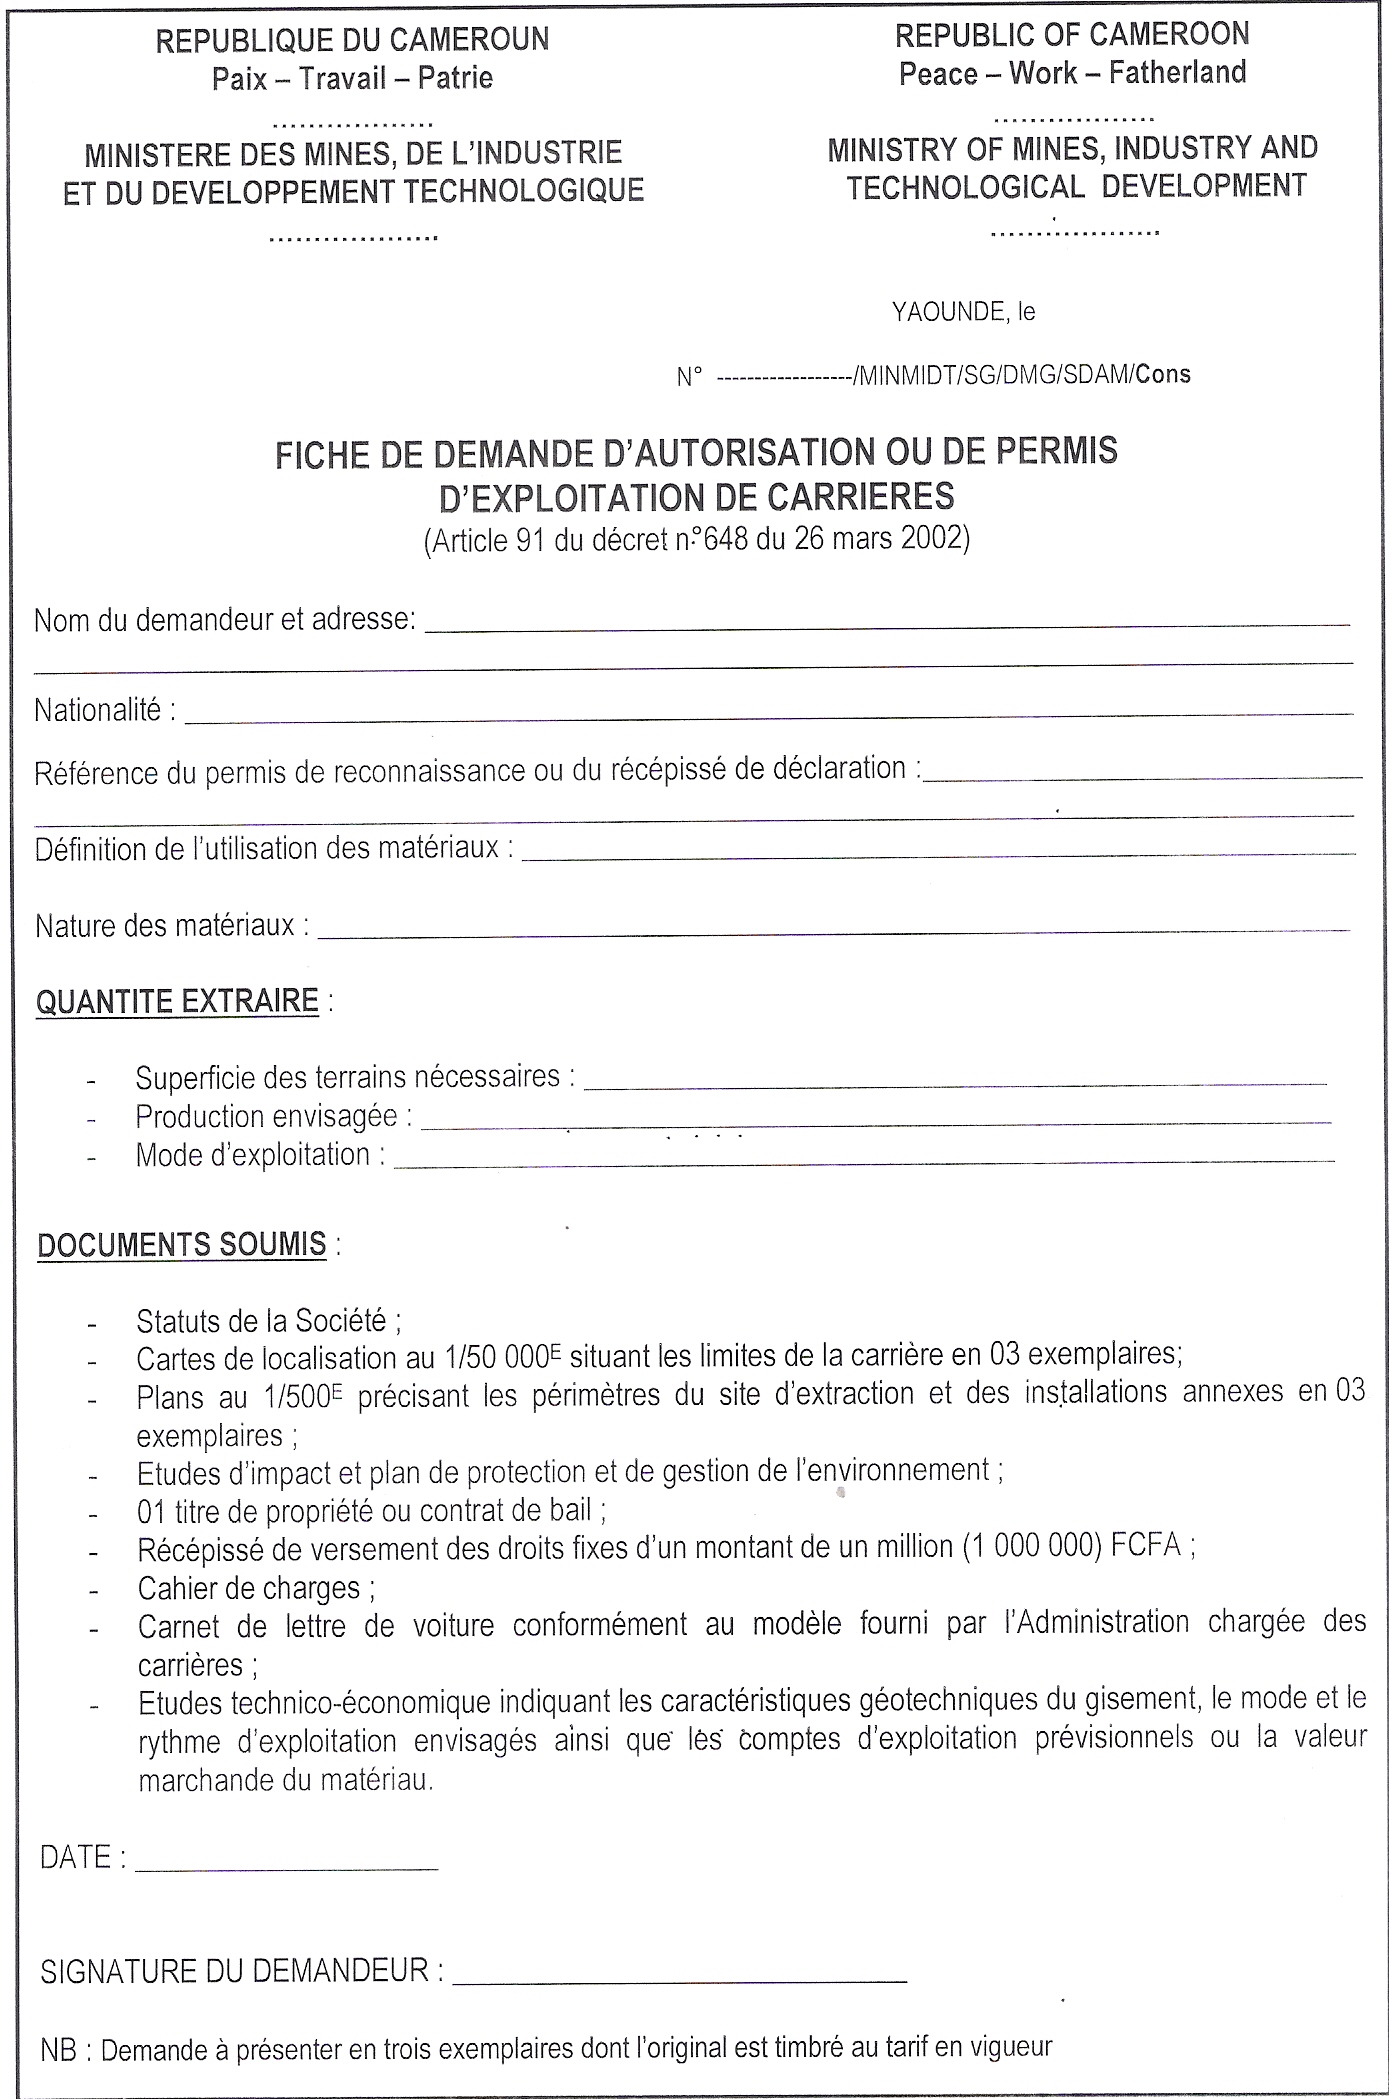 FICHE DEMANDE D’AUTORISATION OU DE PERMIS EXPLOIT CARRIERES.45